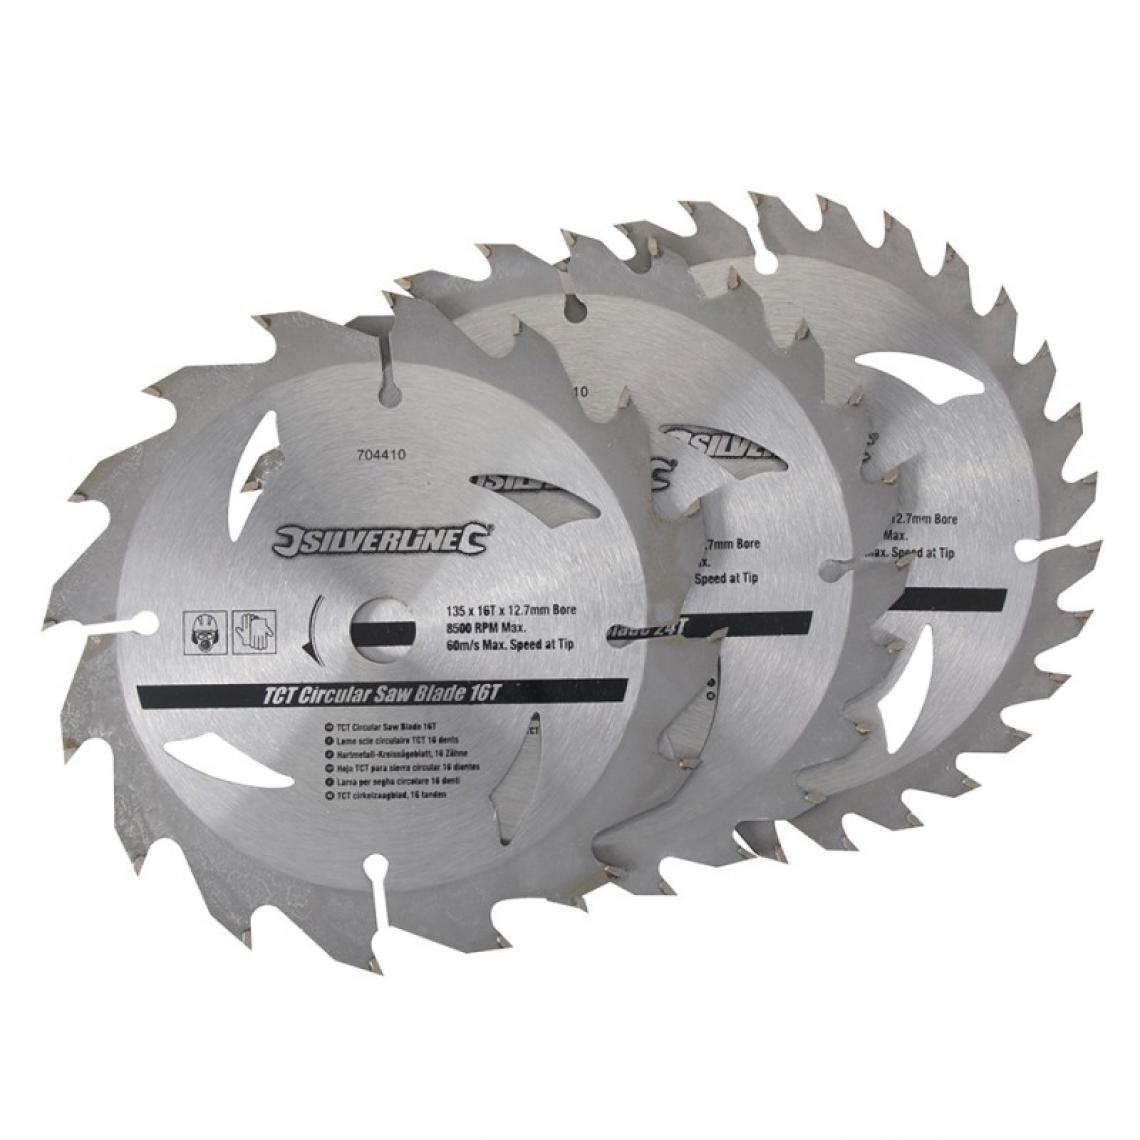 Silverline - 3 lames scie circulaire TCT 16, 24 et 30 dents - 135 x 12,7 - bague de réduction de 10 mm - Accessoires meulage